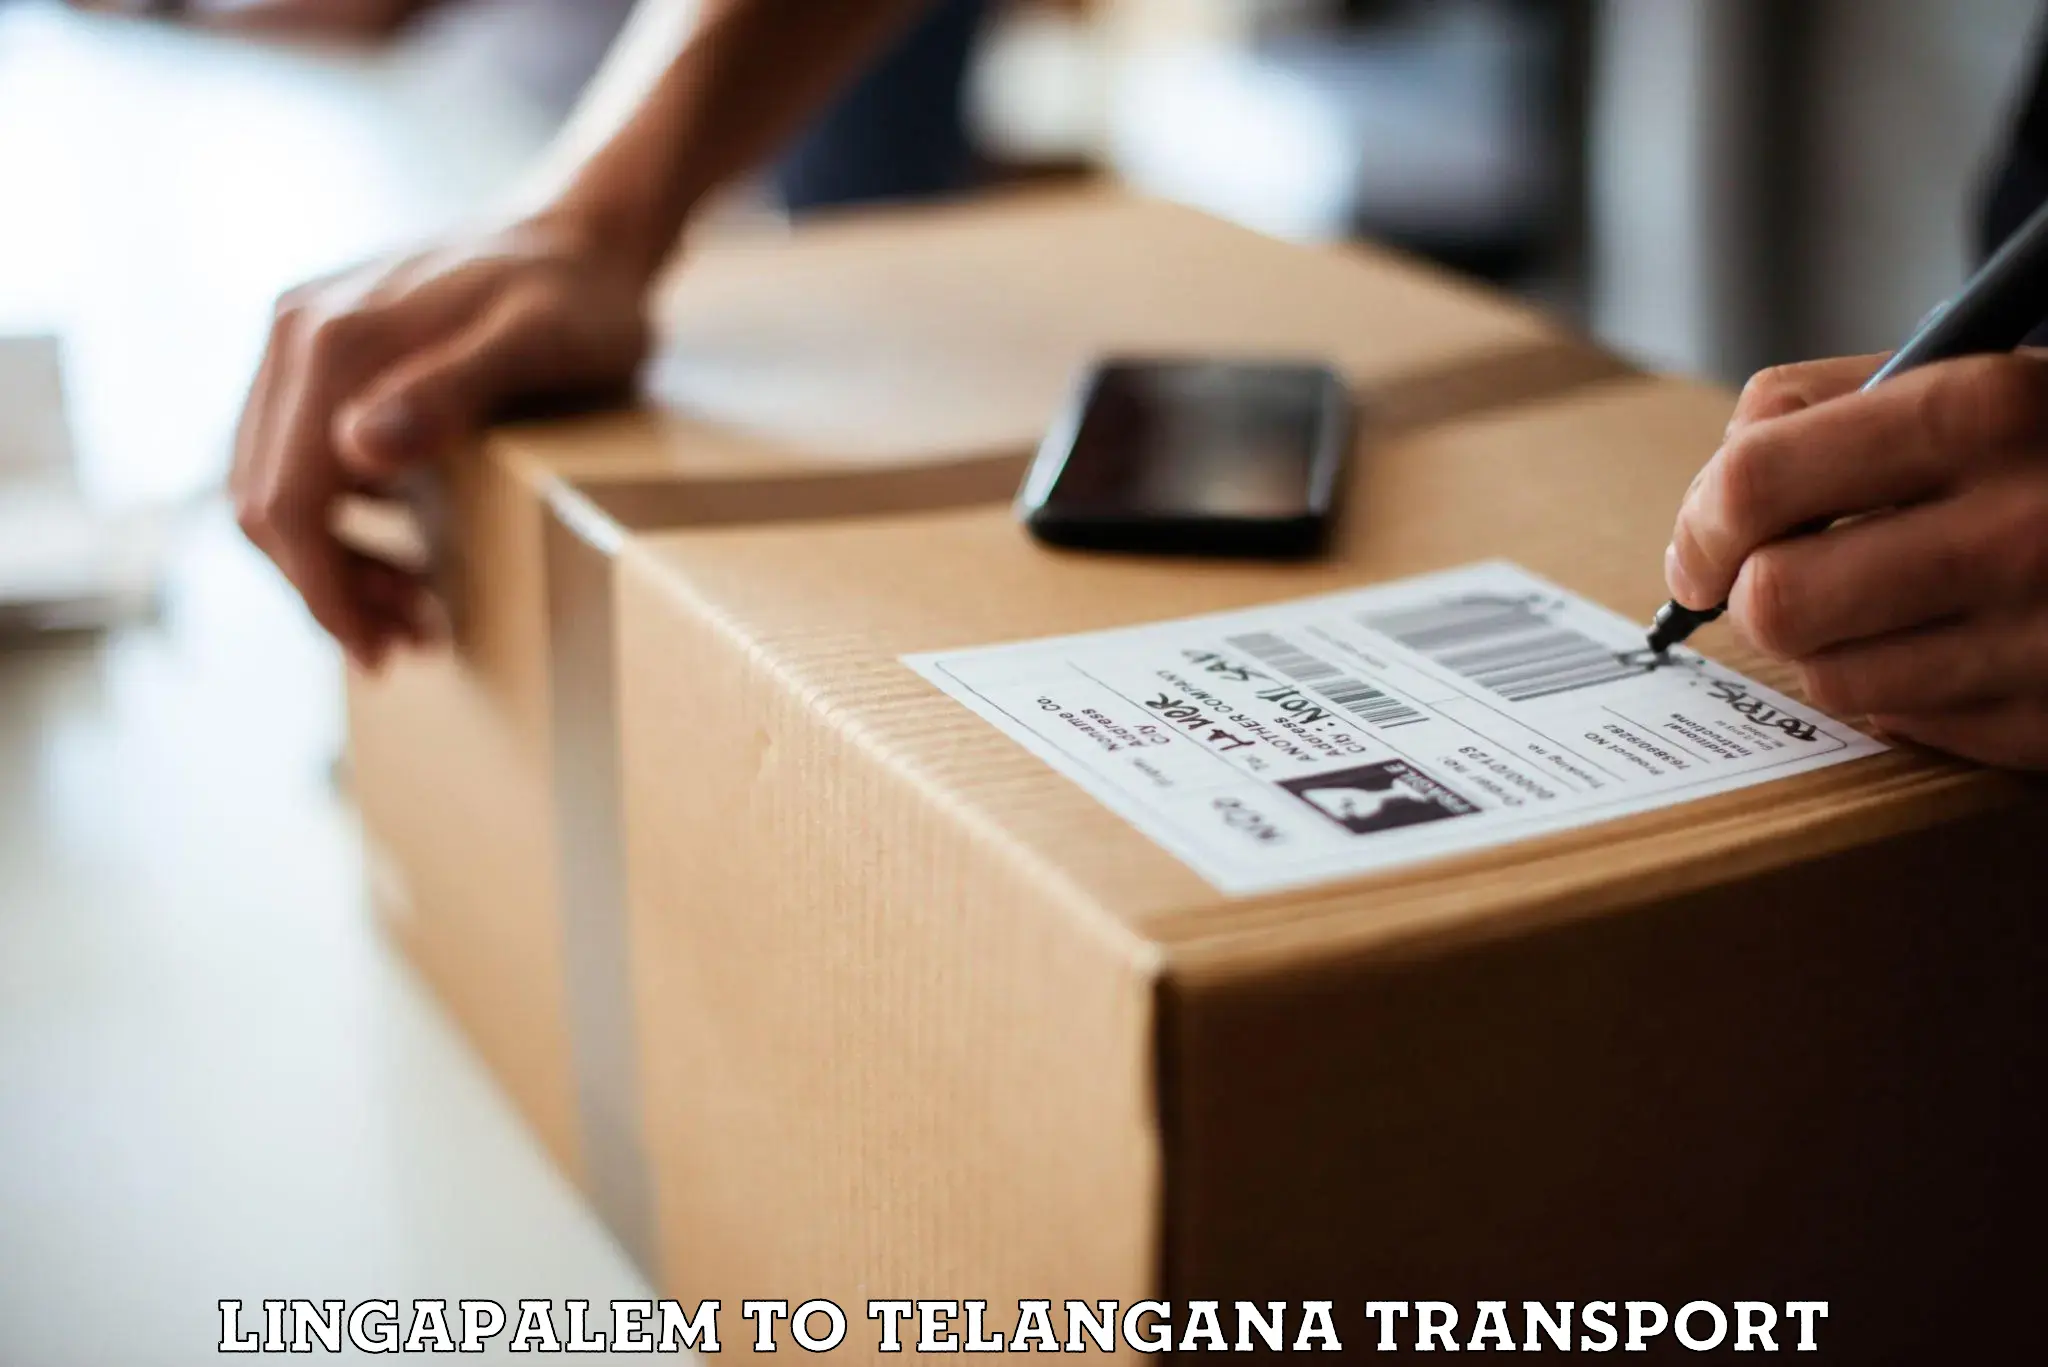 Furniture transport service Lingapalem to Secunderabad